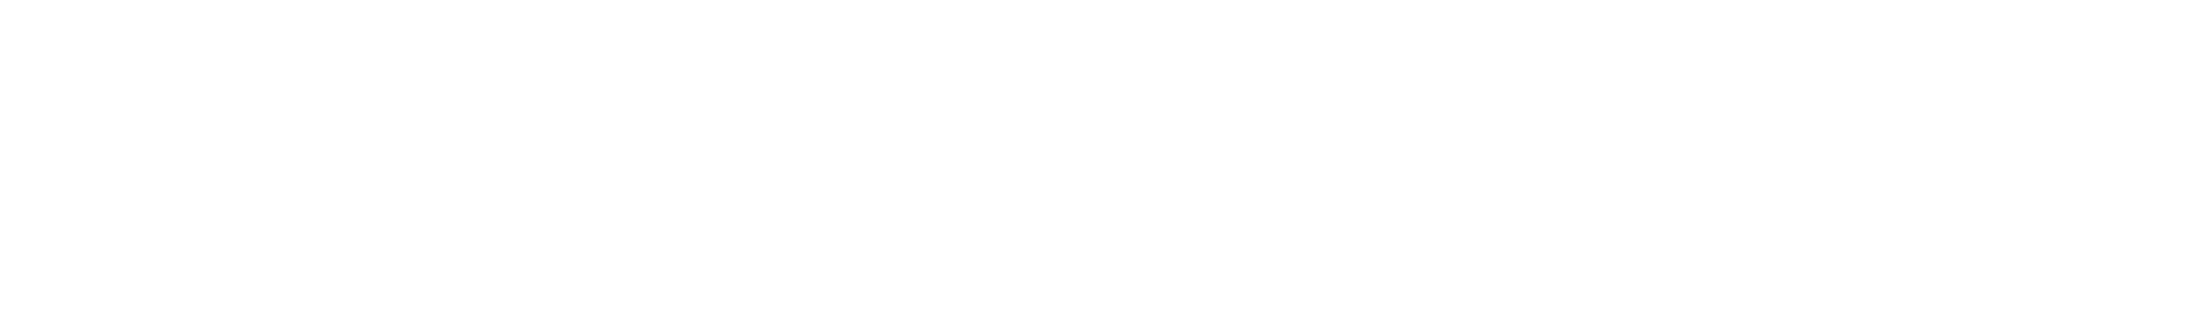 FlagHouse logo